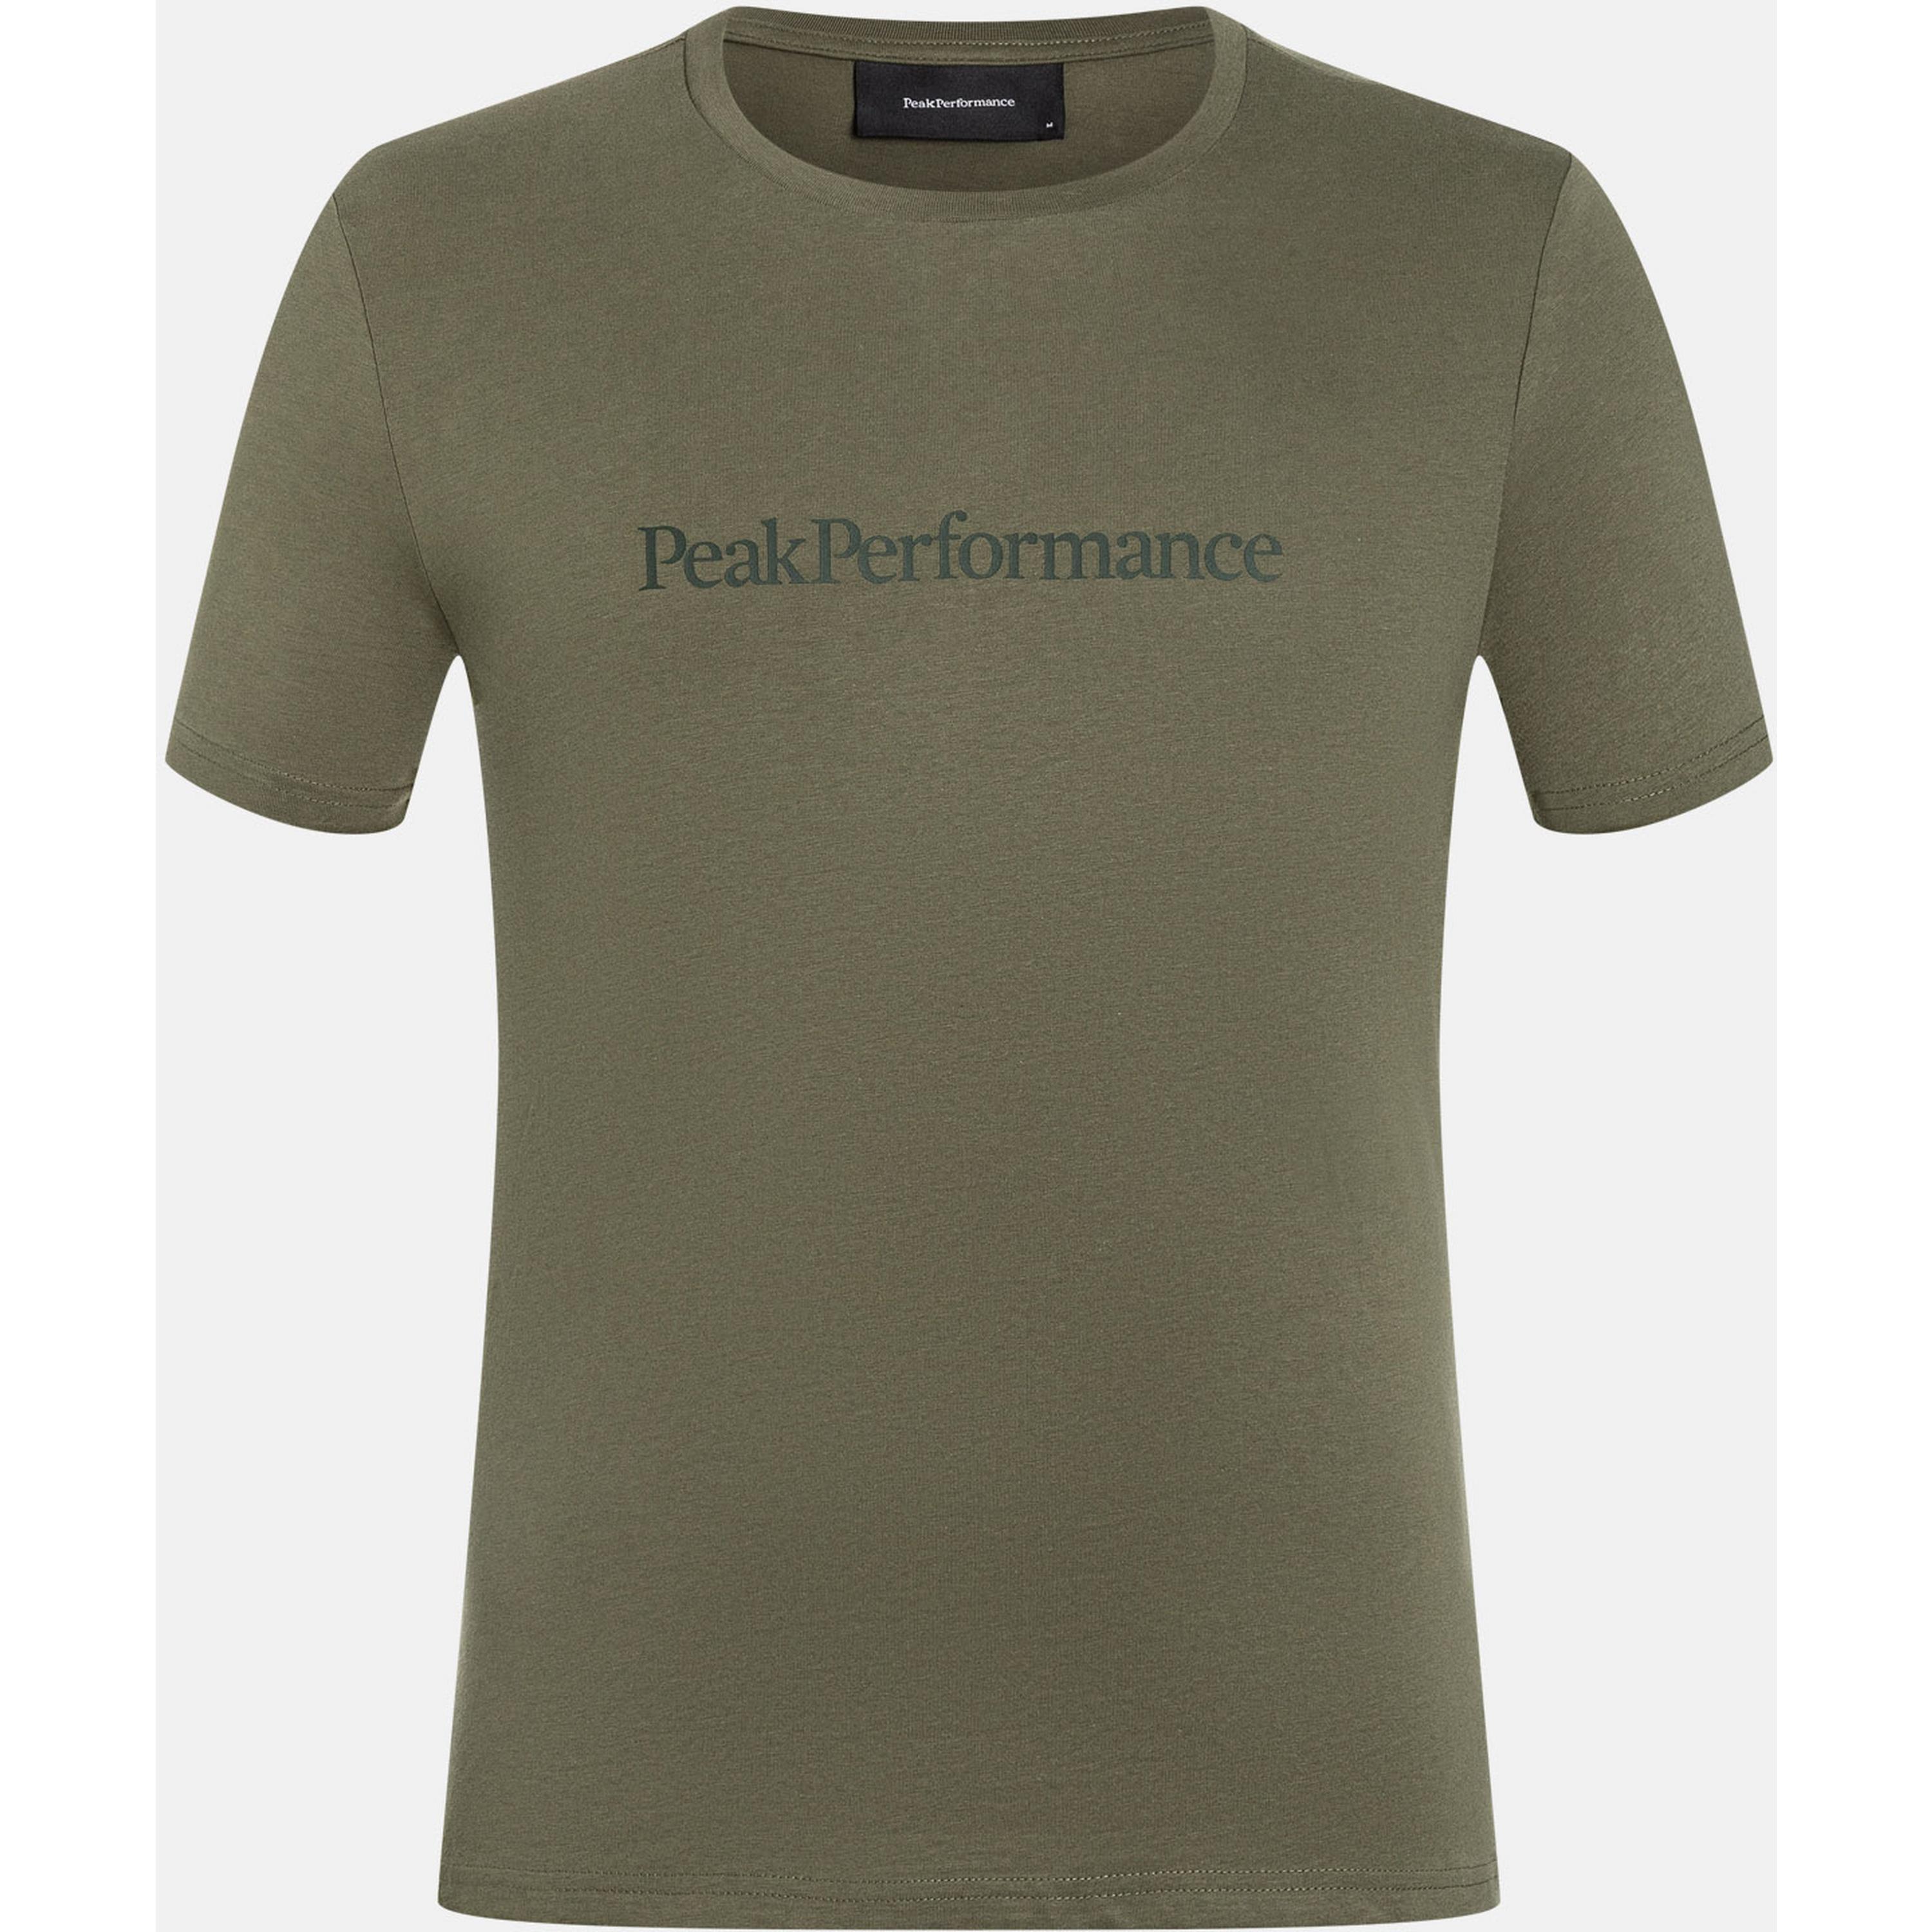 Peak Performance Ground T-Shirt Herren product